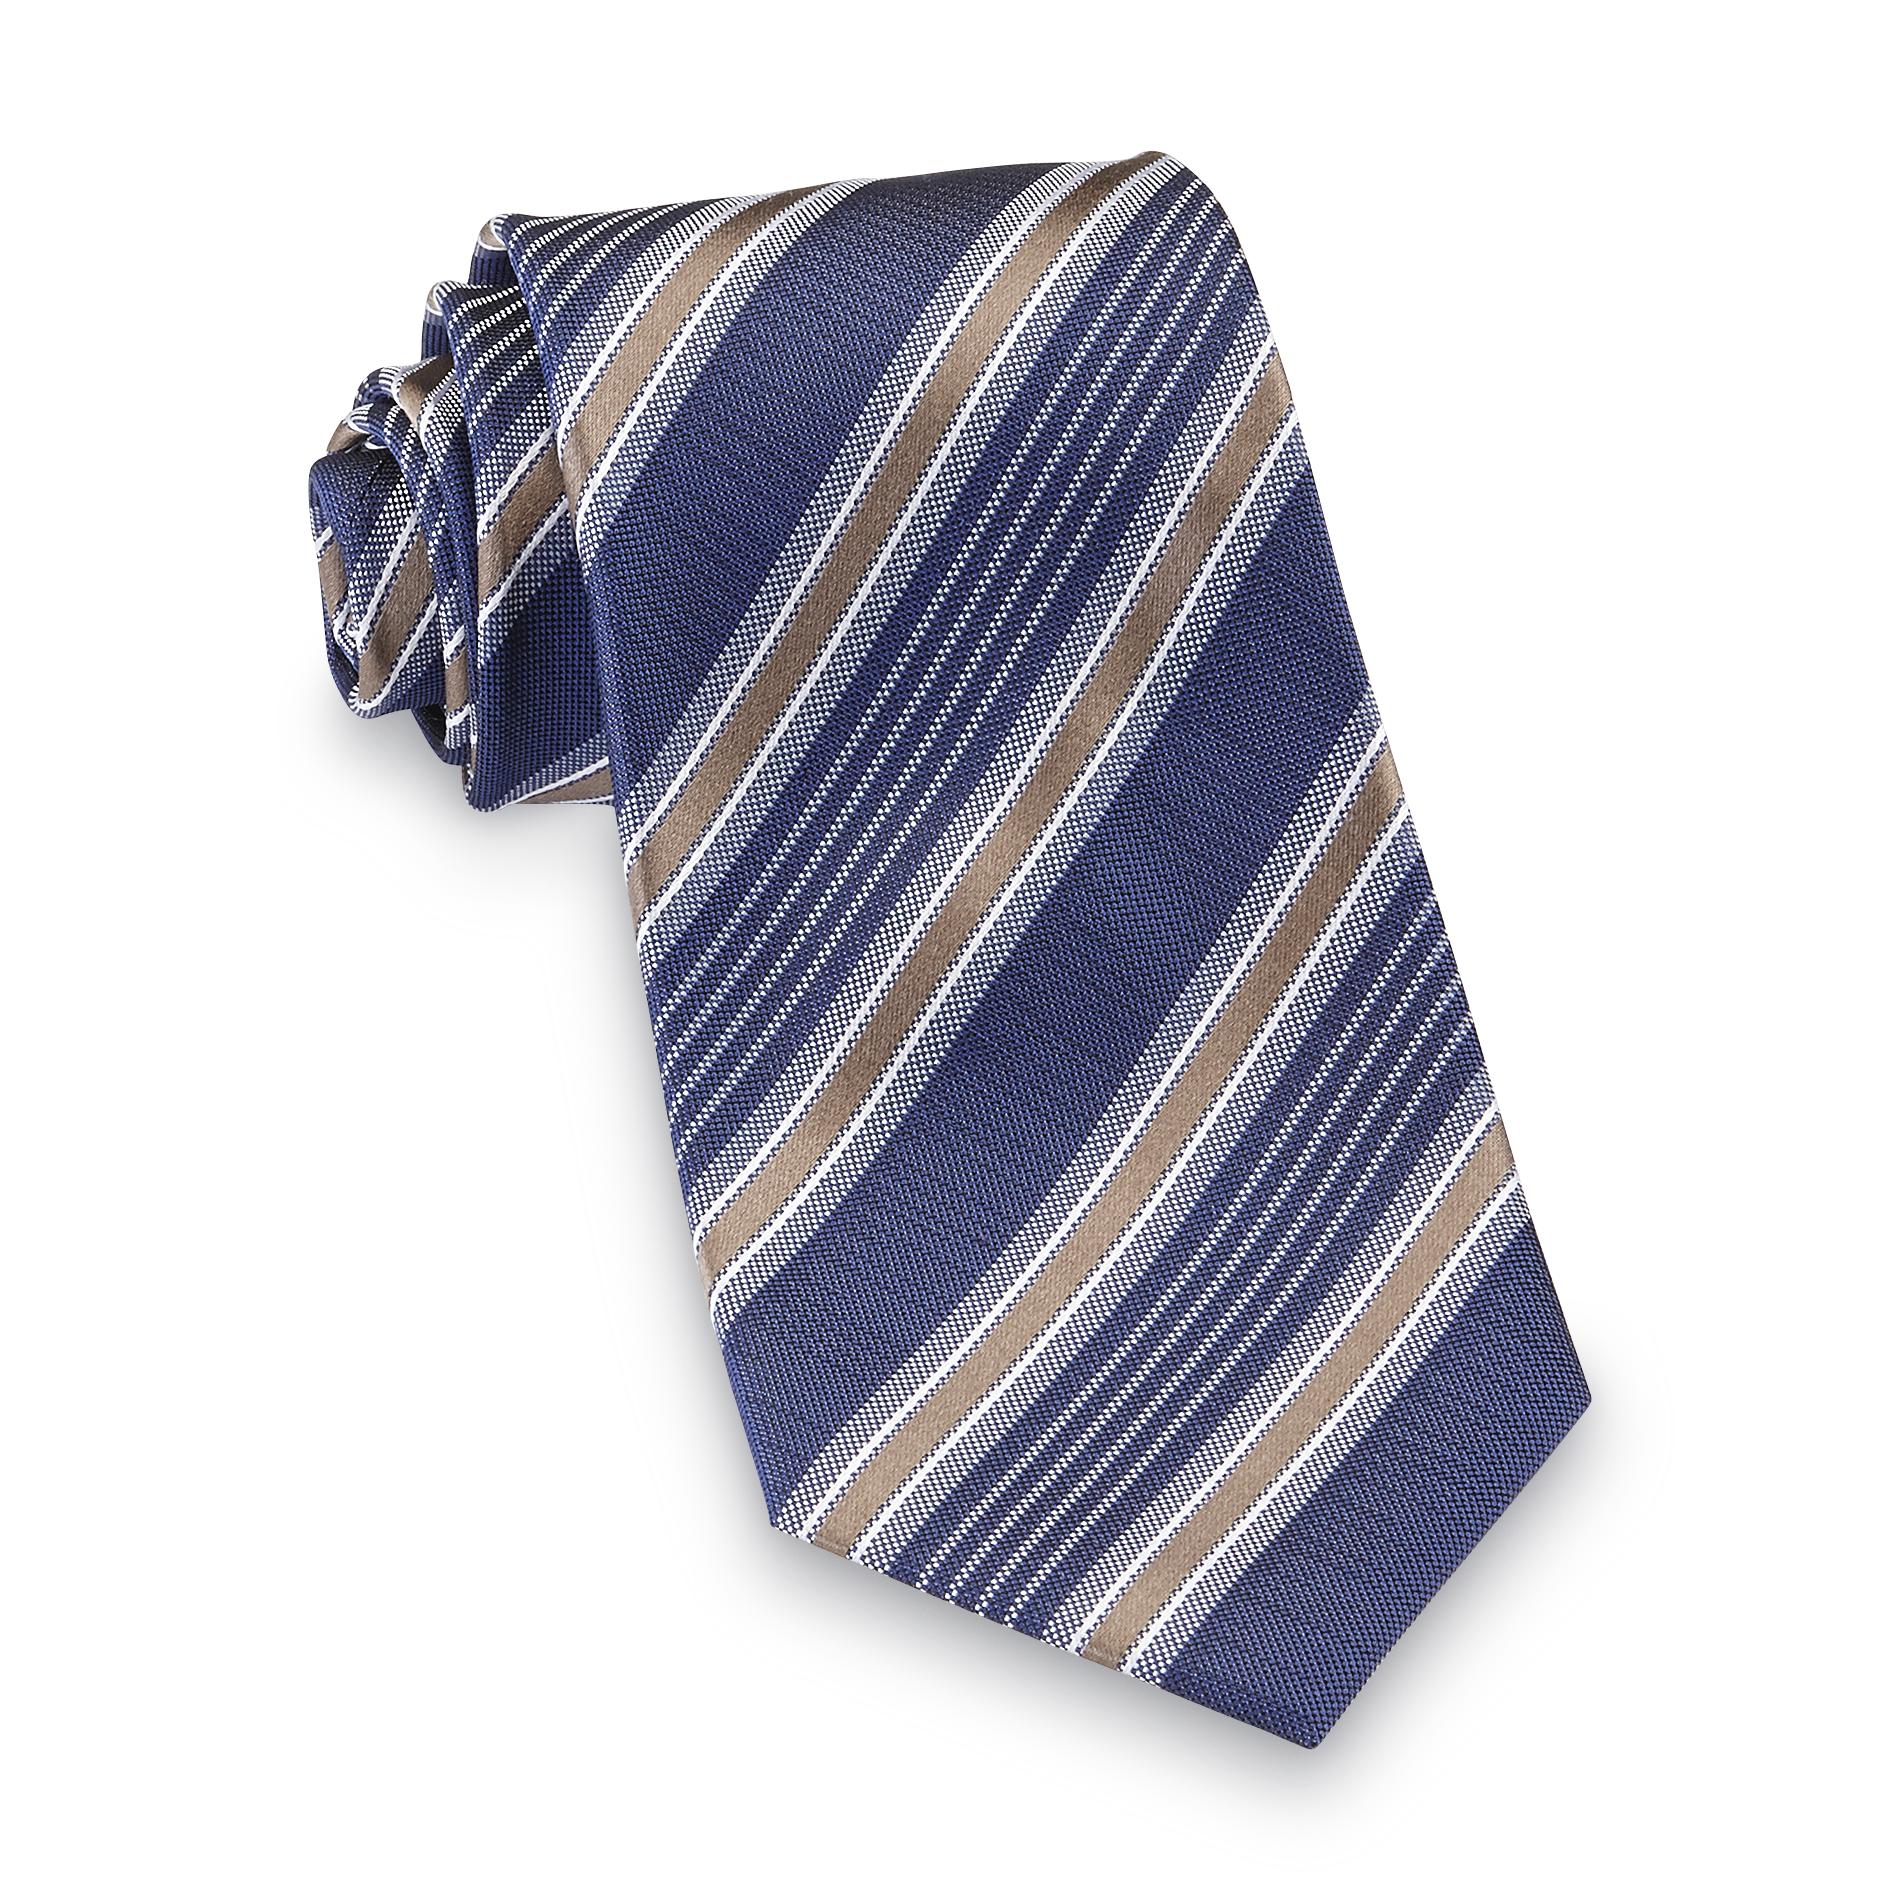 Dockers Men's Necktie - Striped